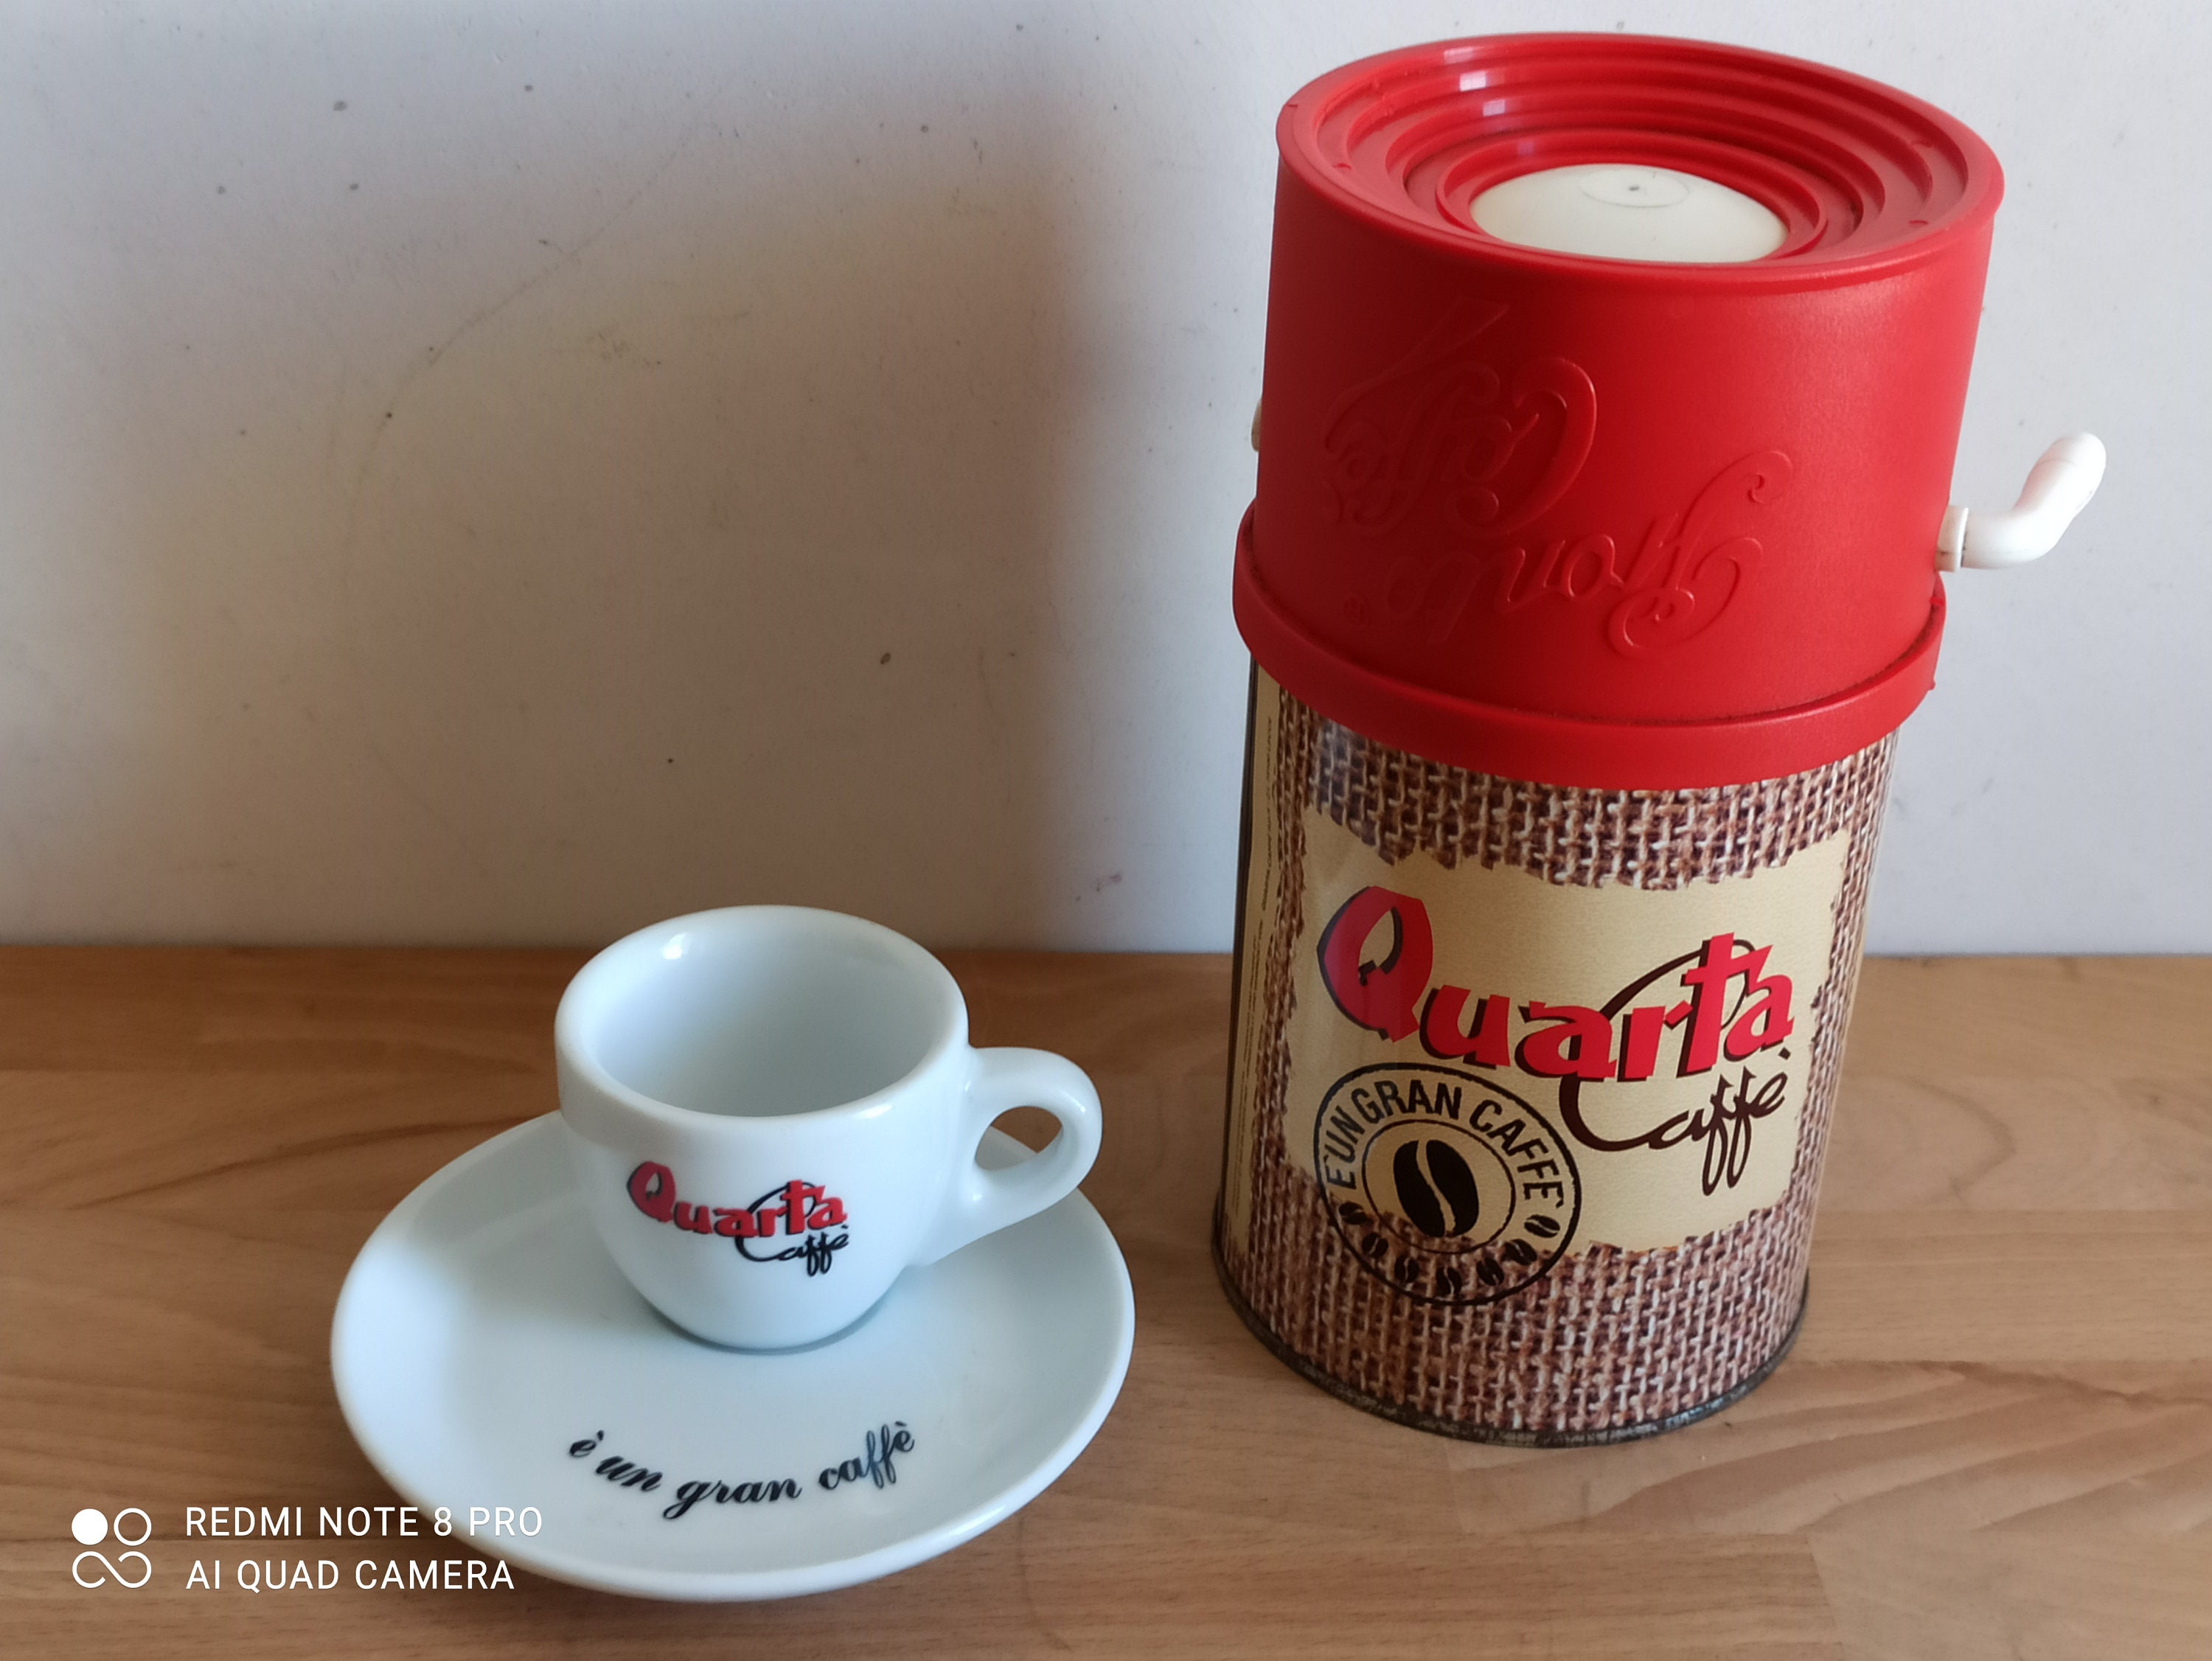 Nice Quarta 'dosatore', Coffee Dispenser and a Quarta Espresso Cup 